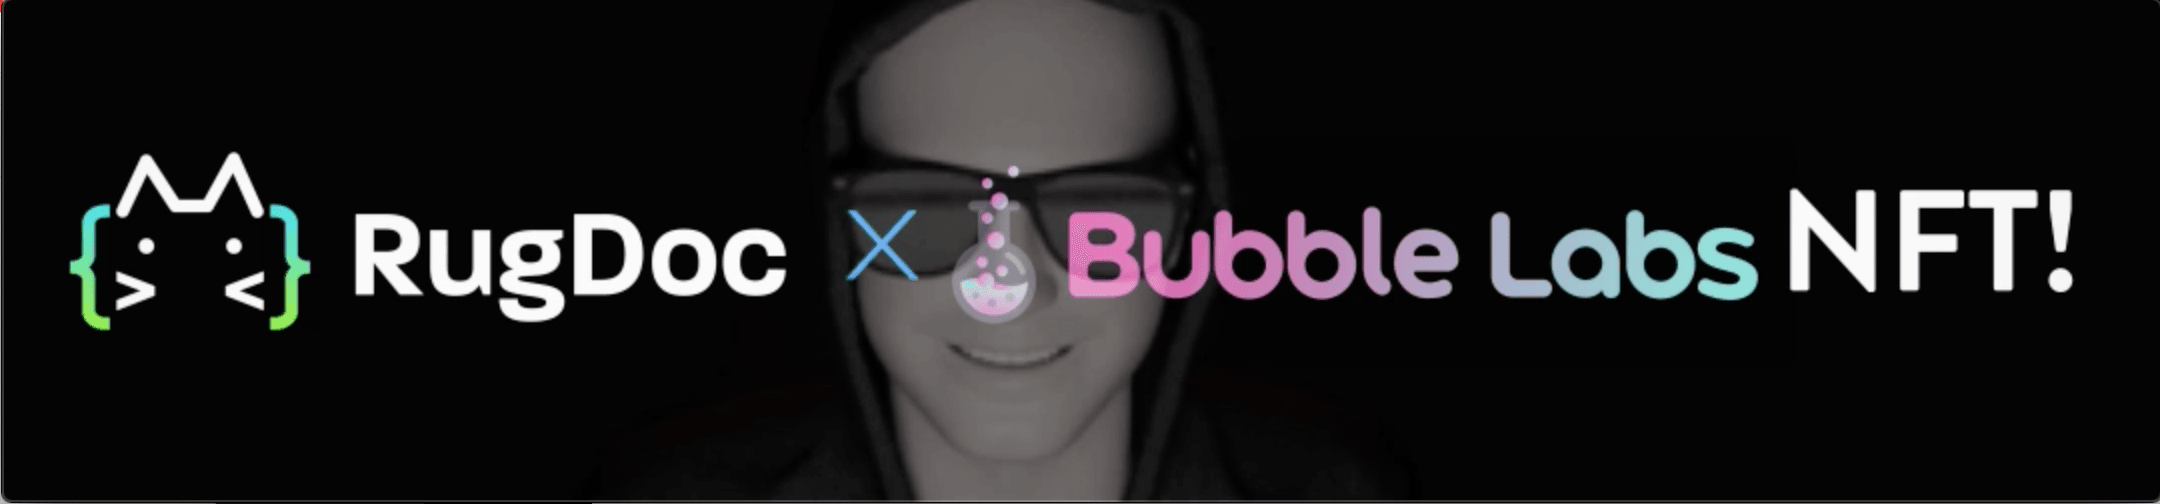 RugDoc-BubbleLabs bannière